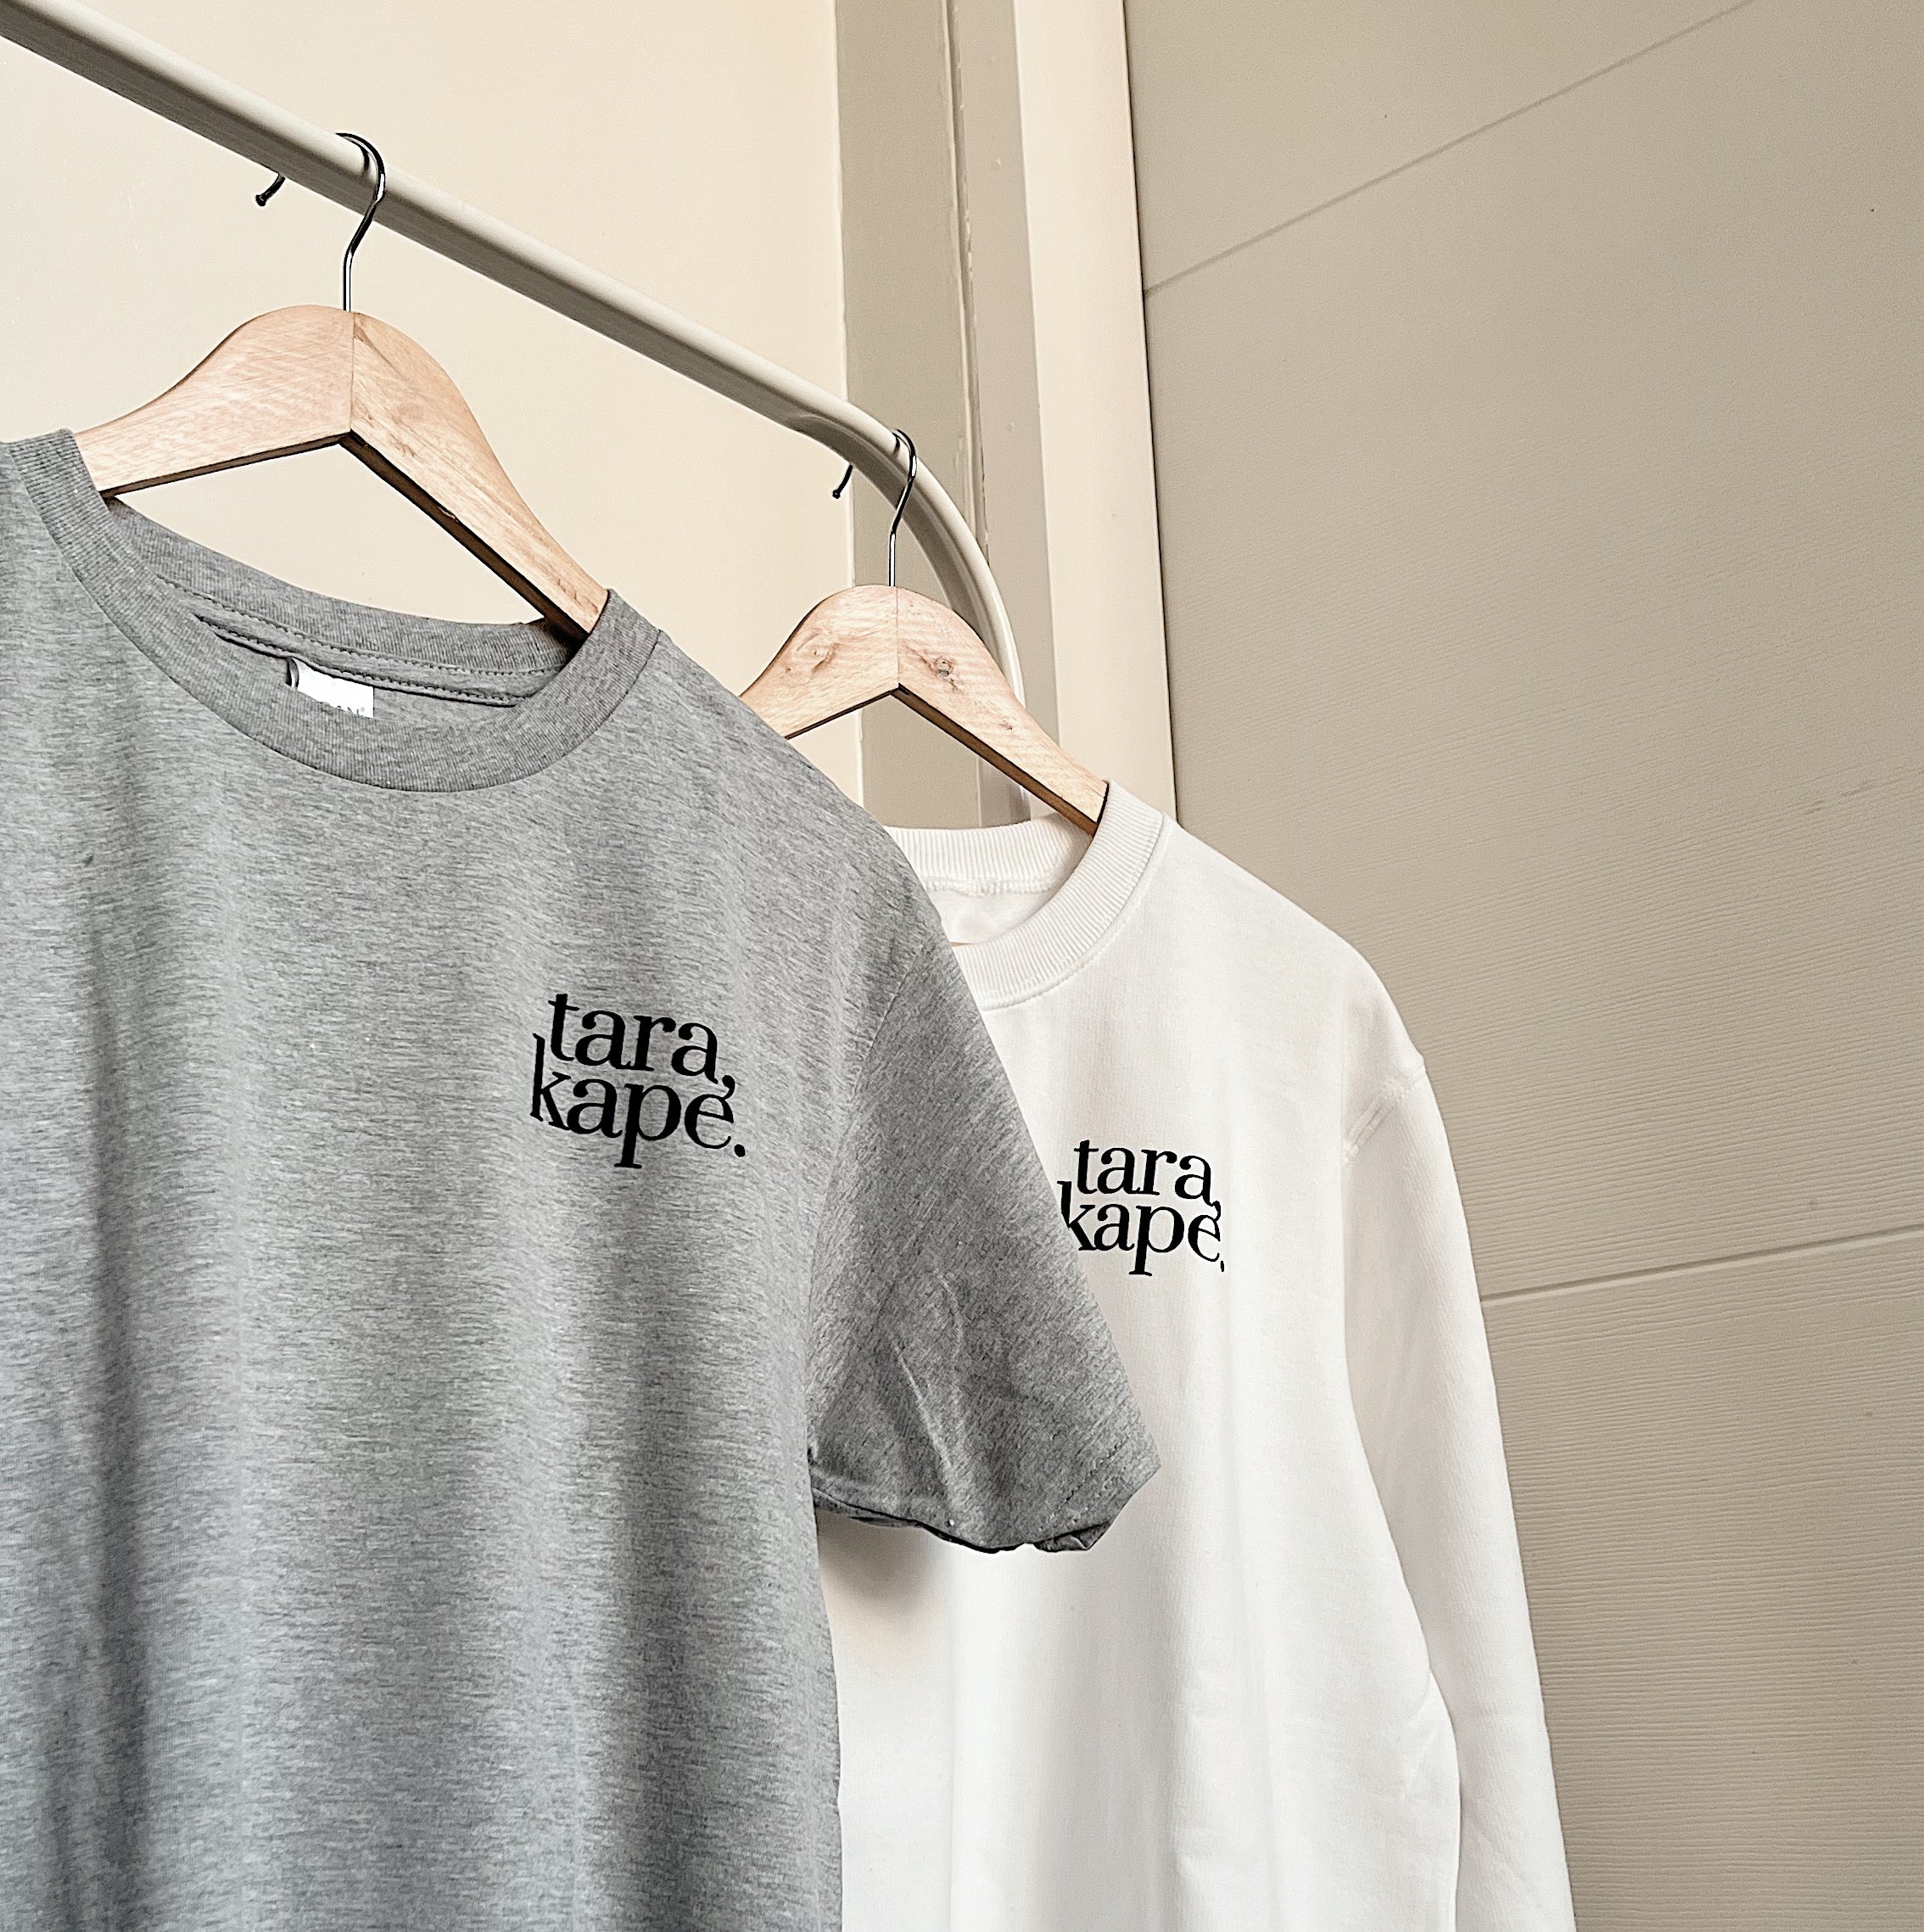 Tara, Kape. (Shirt)